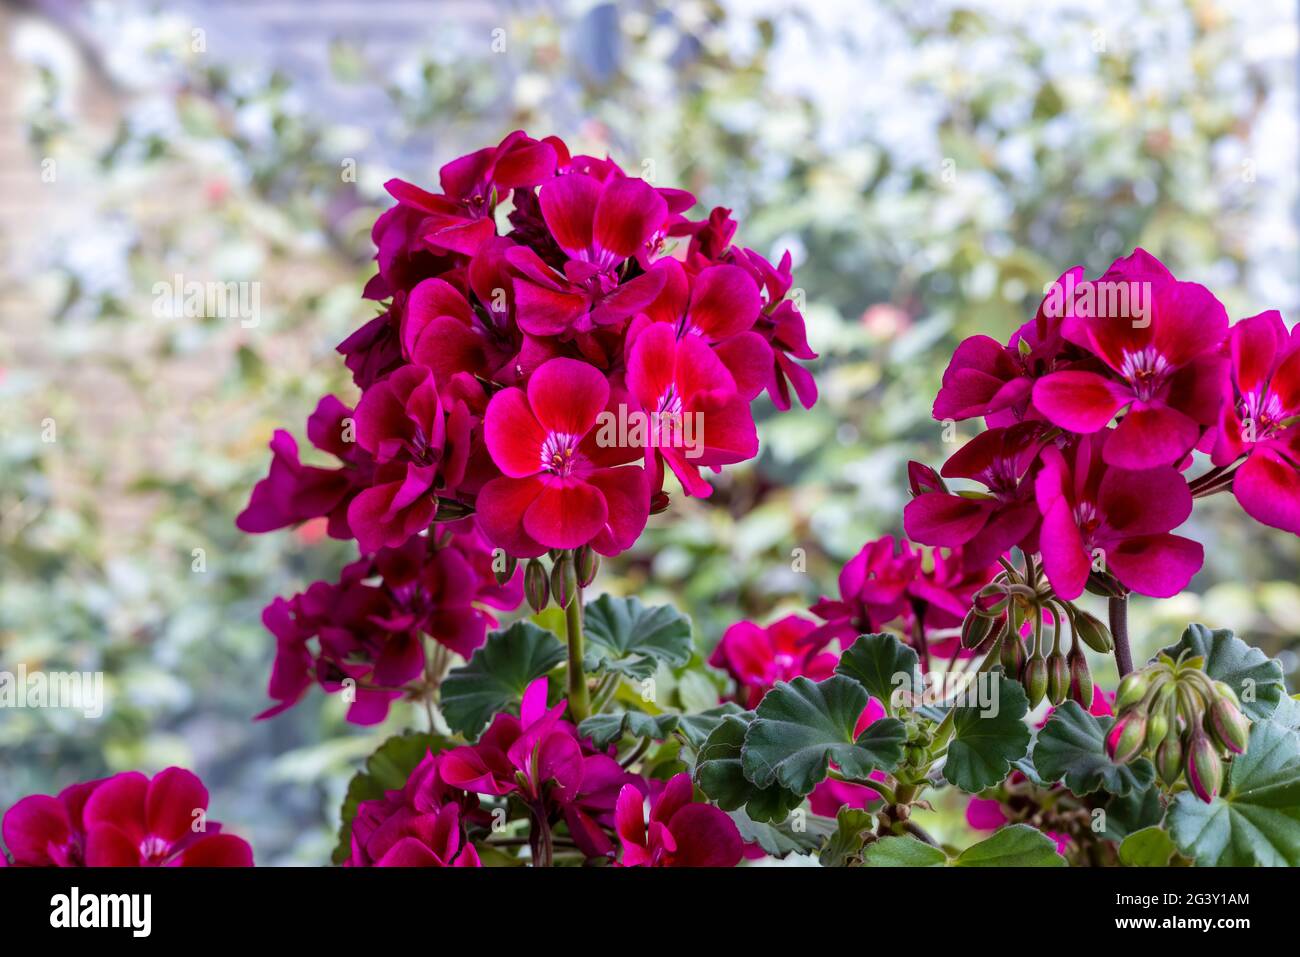 Grappoli arrotondati di pelargonio rosa profondo, comunemente noto come geranio, fiori da vicino. Foto Stock